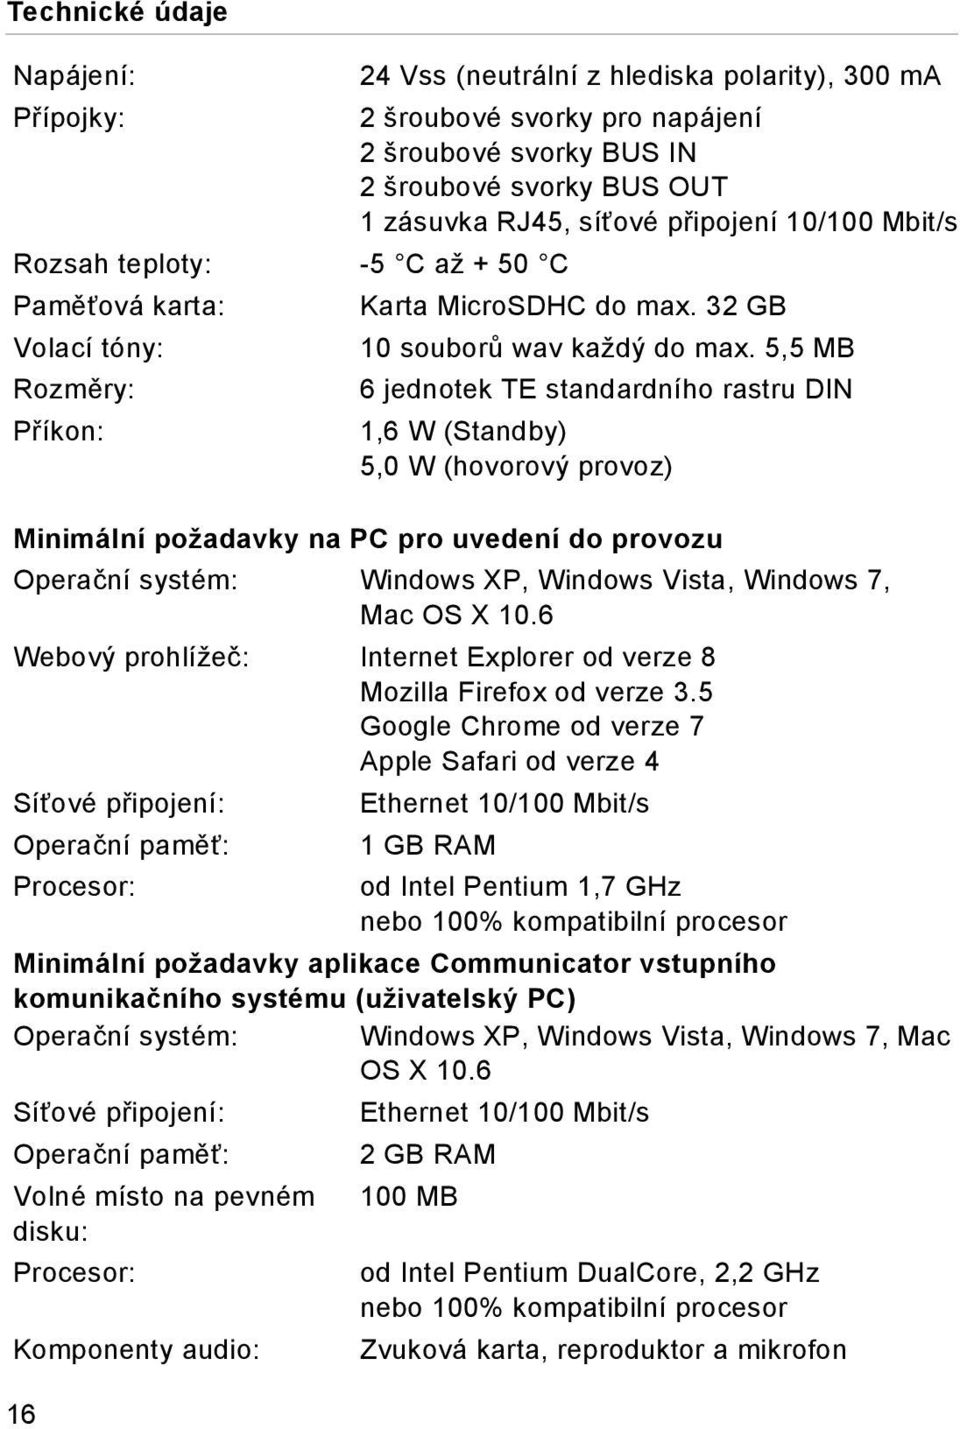 5,5 MB Rozměry: 6 jednotek TE standardního rastru DIN Příkon: 1,6 W (Standby) 5,0 W (hovorový provoz) Minimální požadavky na PC pro uvedení do provozu Operační systém: Windows XP, Windows Vista,